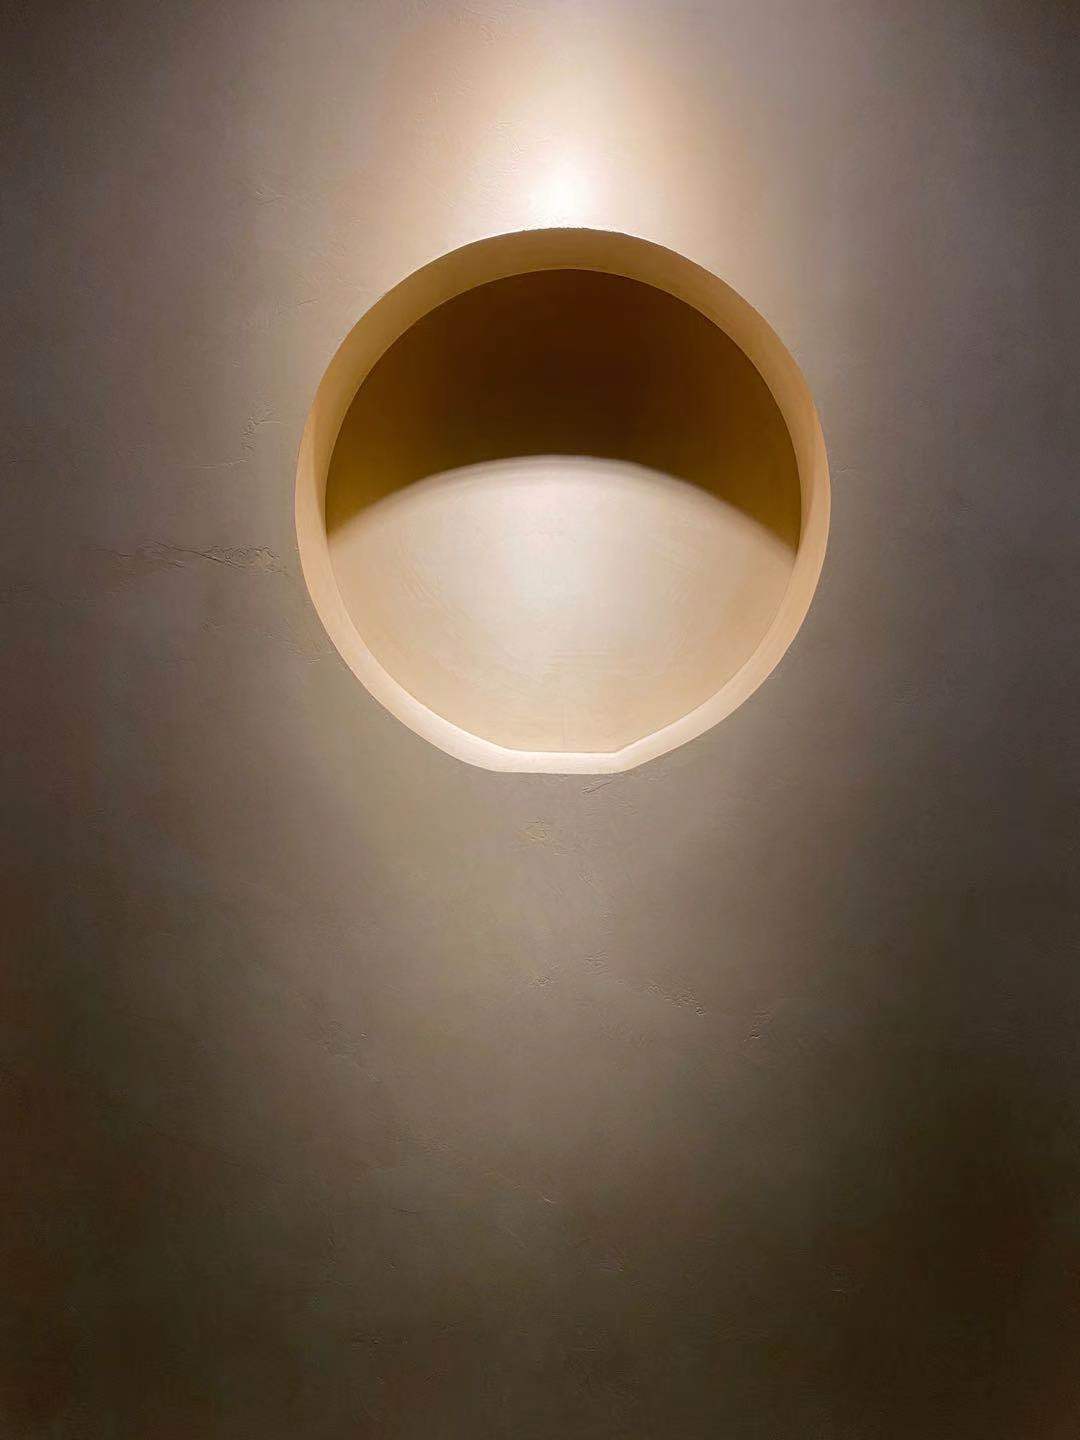 Mikrocement na zidu minimalističkog stila stana s osvjetljenjem koje pojačava oblogu